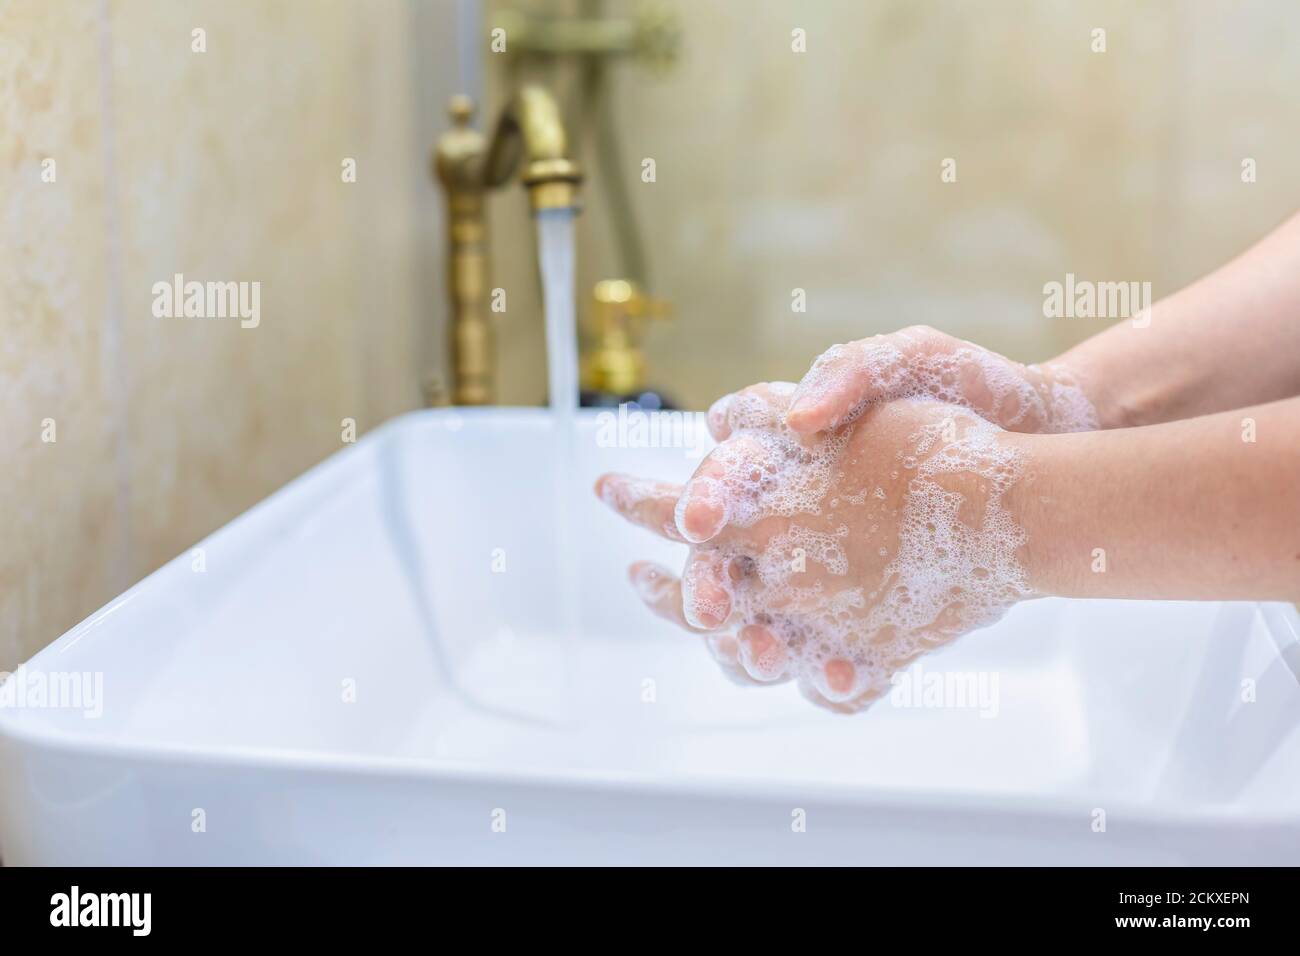 Femme se lavant et se désinfectant les mains avec du savon et de l'eau chaude dans le cadre des protocoles de prévention et de protection du coronavirus; cesser de propager l'hygie covid-19 Banque D'Images